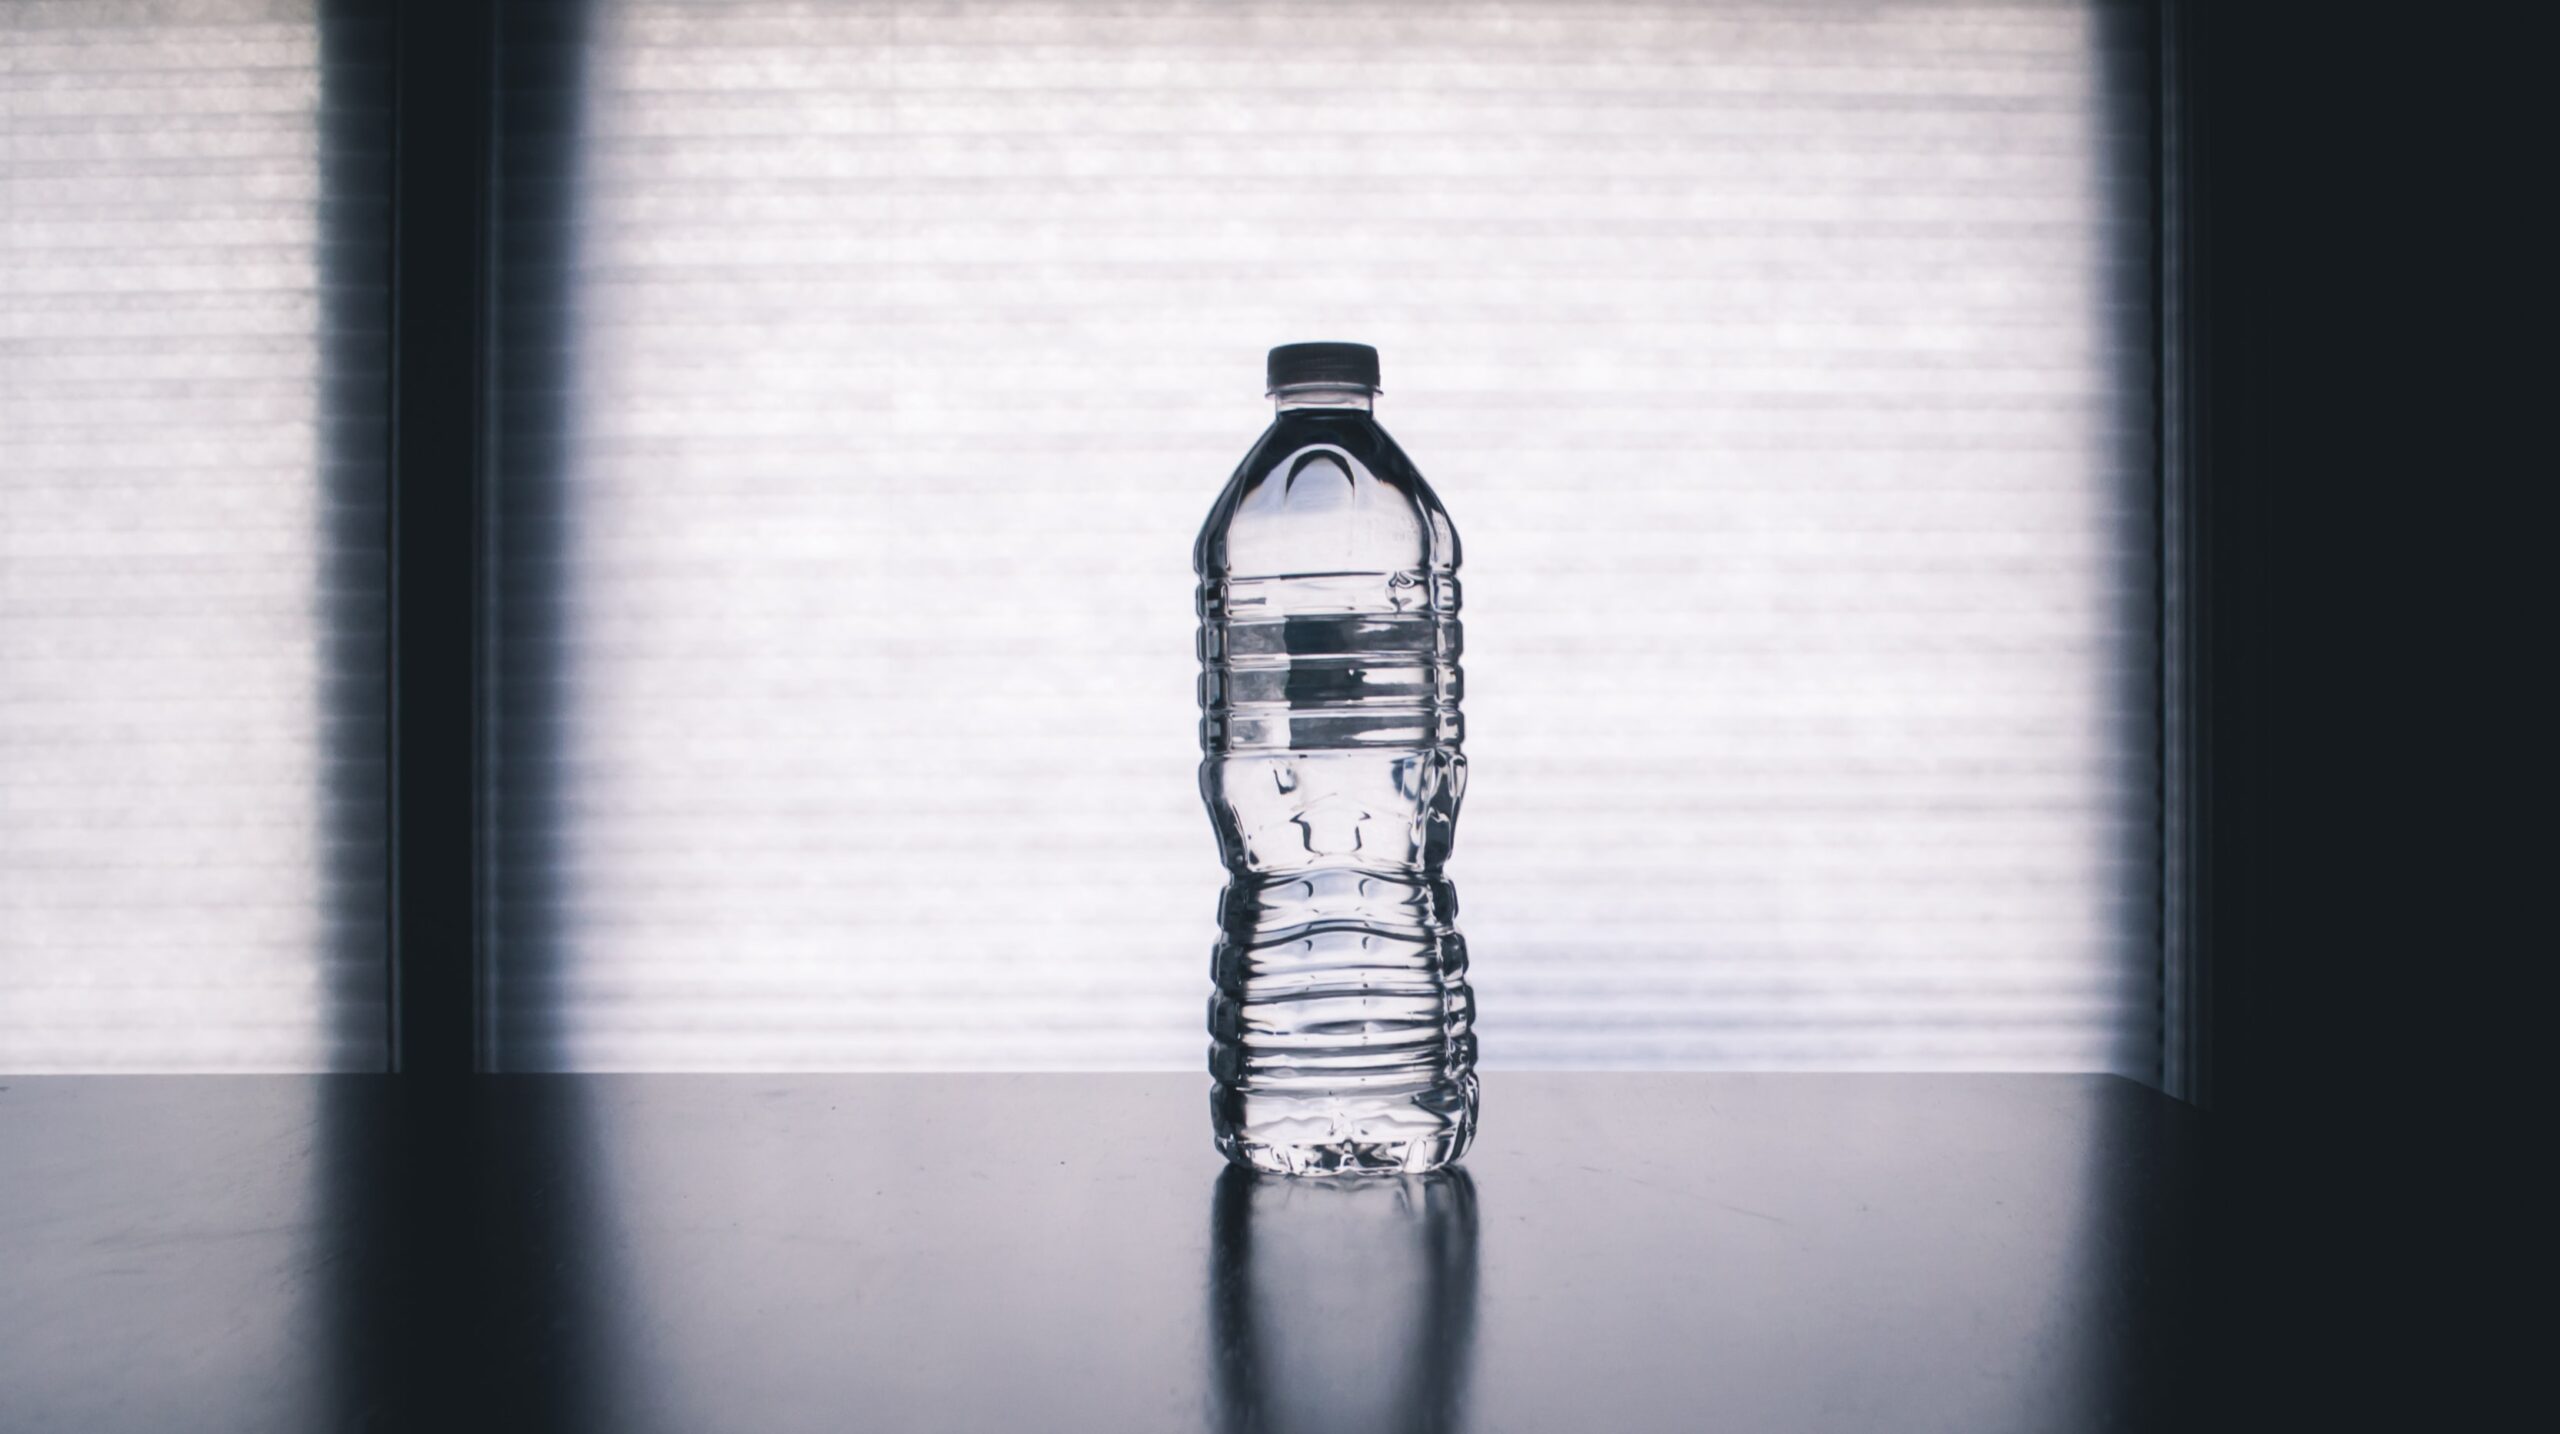 Solo 17% del plástico de botellas es reciclado. Foto de Steve Johnson